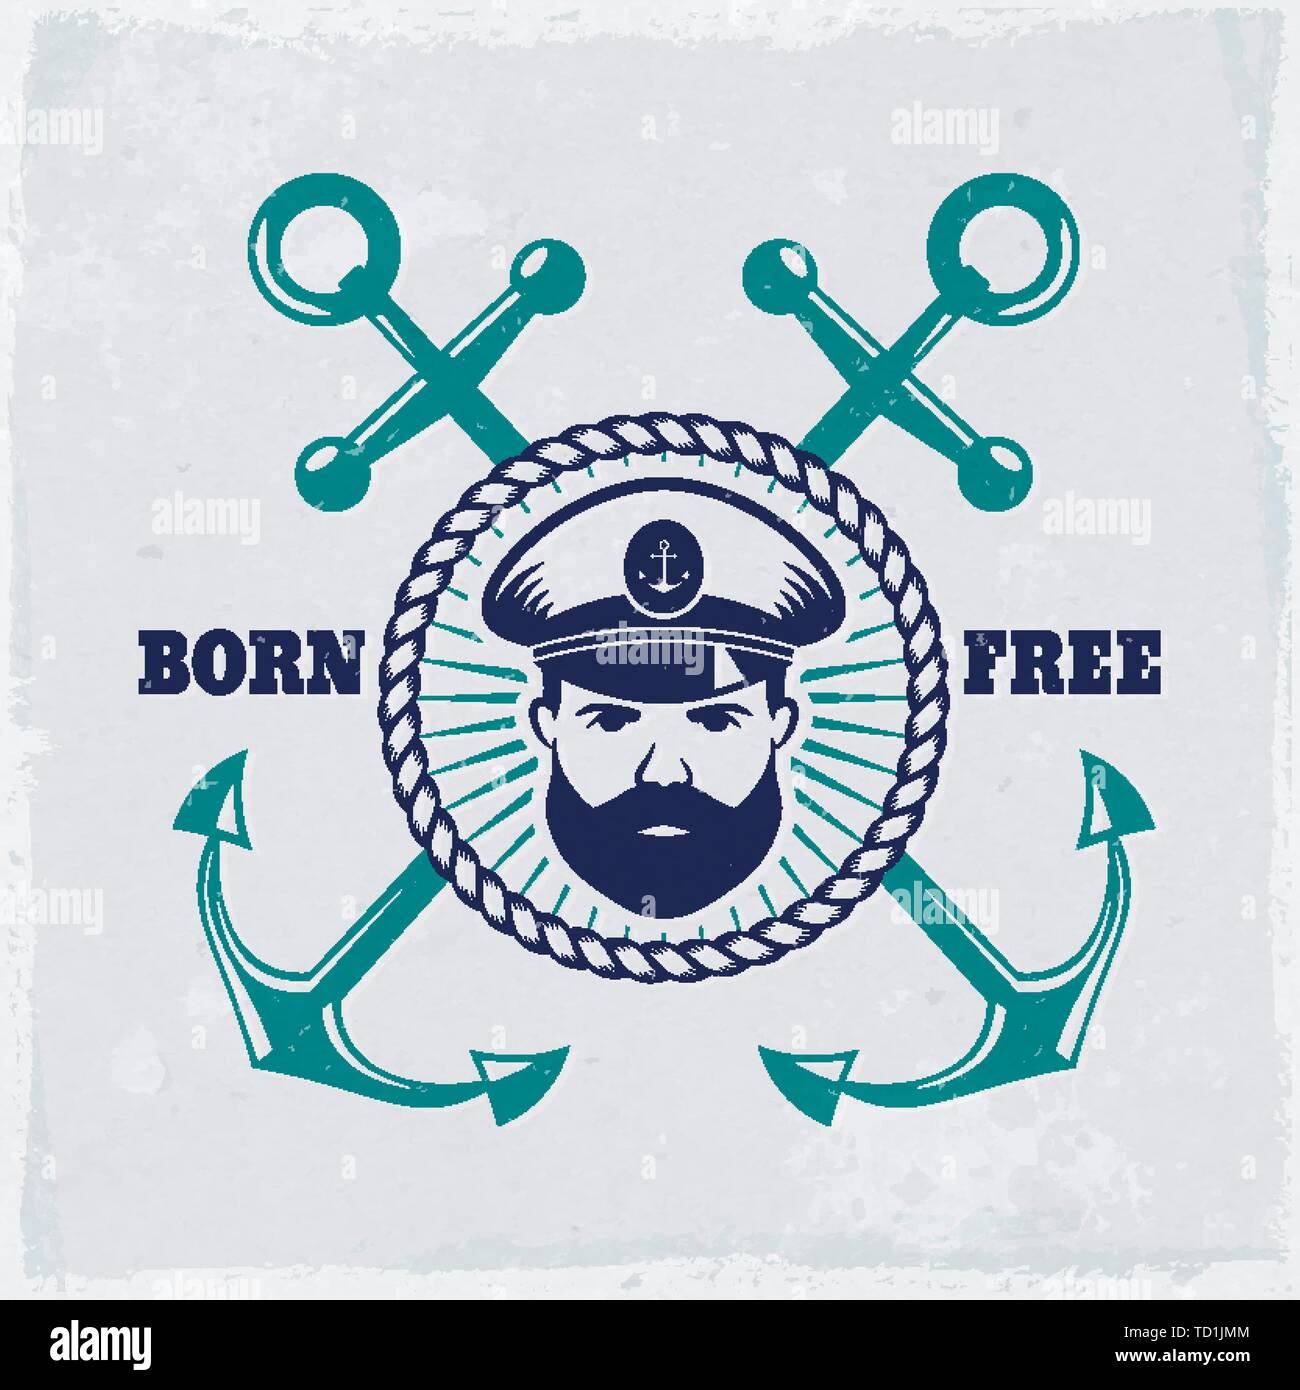 Emblema de época con anclas, capitán de mar y eslogan 'Born free'. Banner náutico con fondo de gruñido. Elegante diseño de camiseta, etiqueta marina. Ilustración del Vector